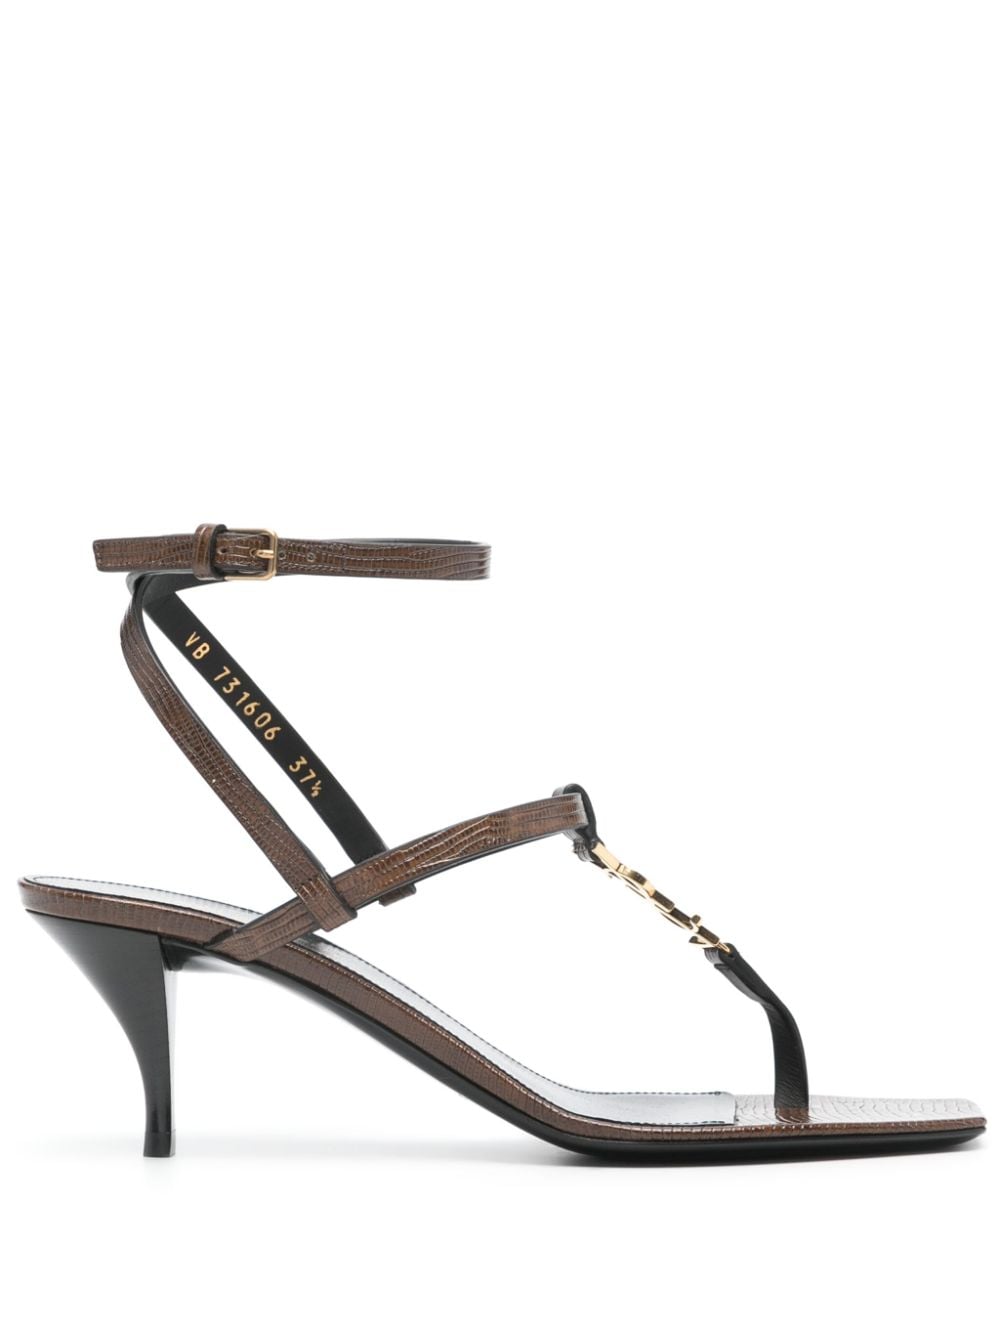 Image 1 of Saint Laurent Cassandra 60mm leather sandals